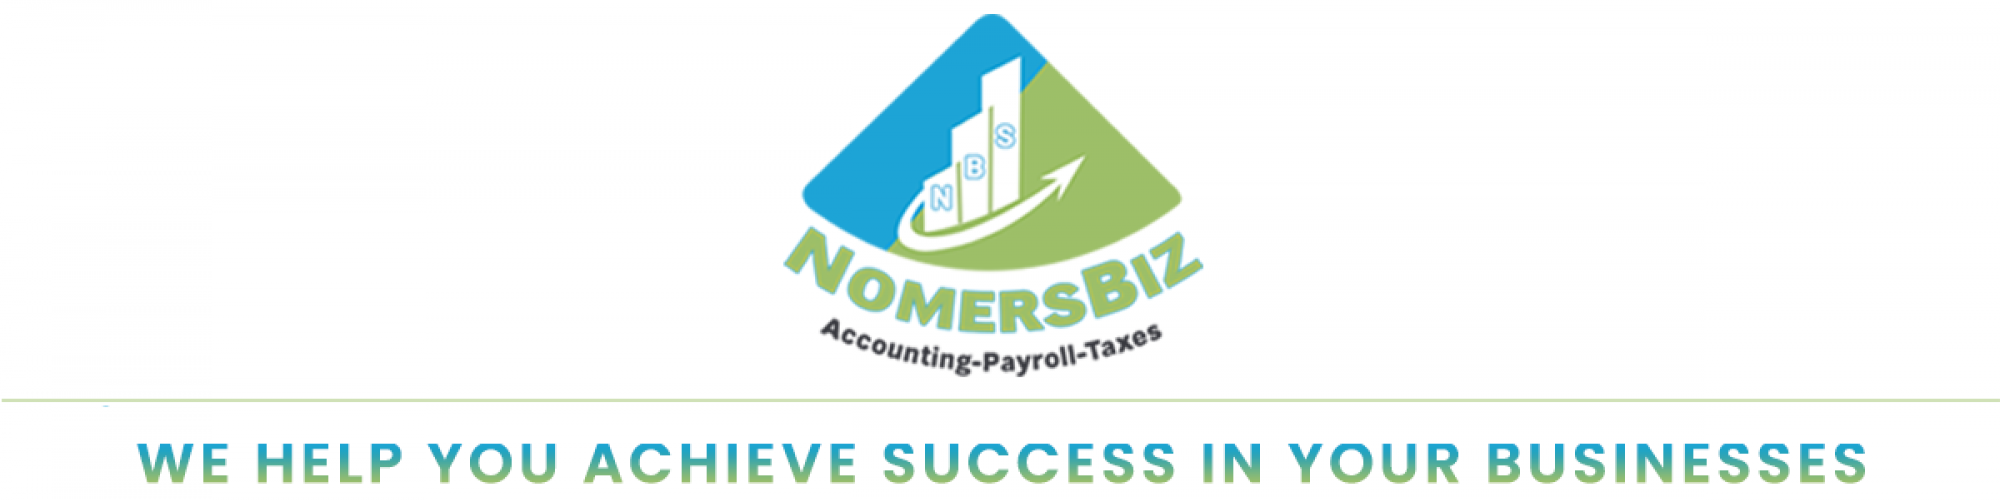 NomersBiz-Accounting-Payroll-Taxes